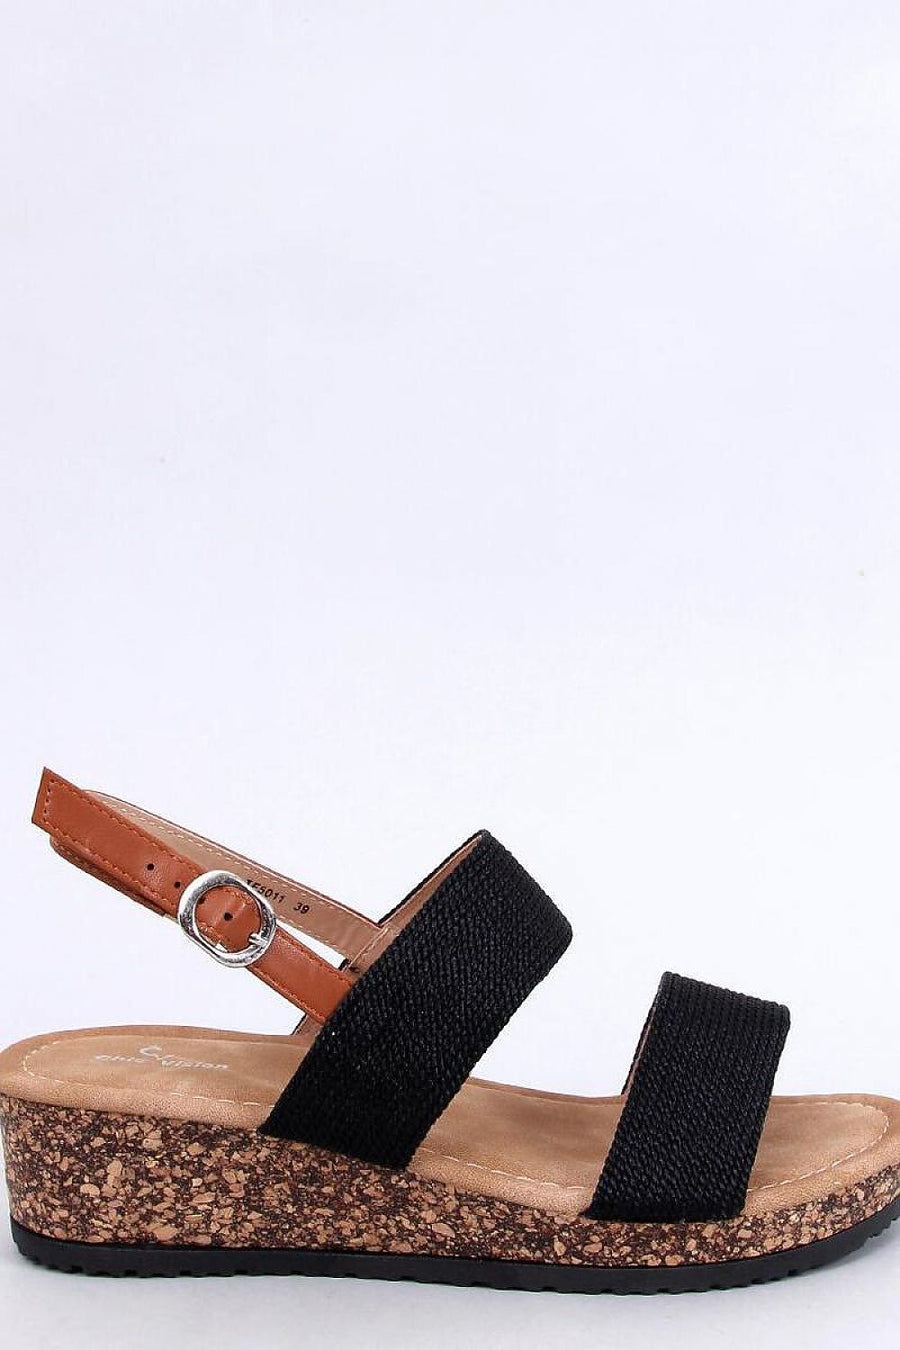 Sandalen mit Absatz Model 197256 Inello